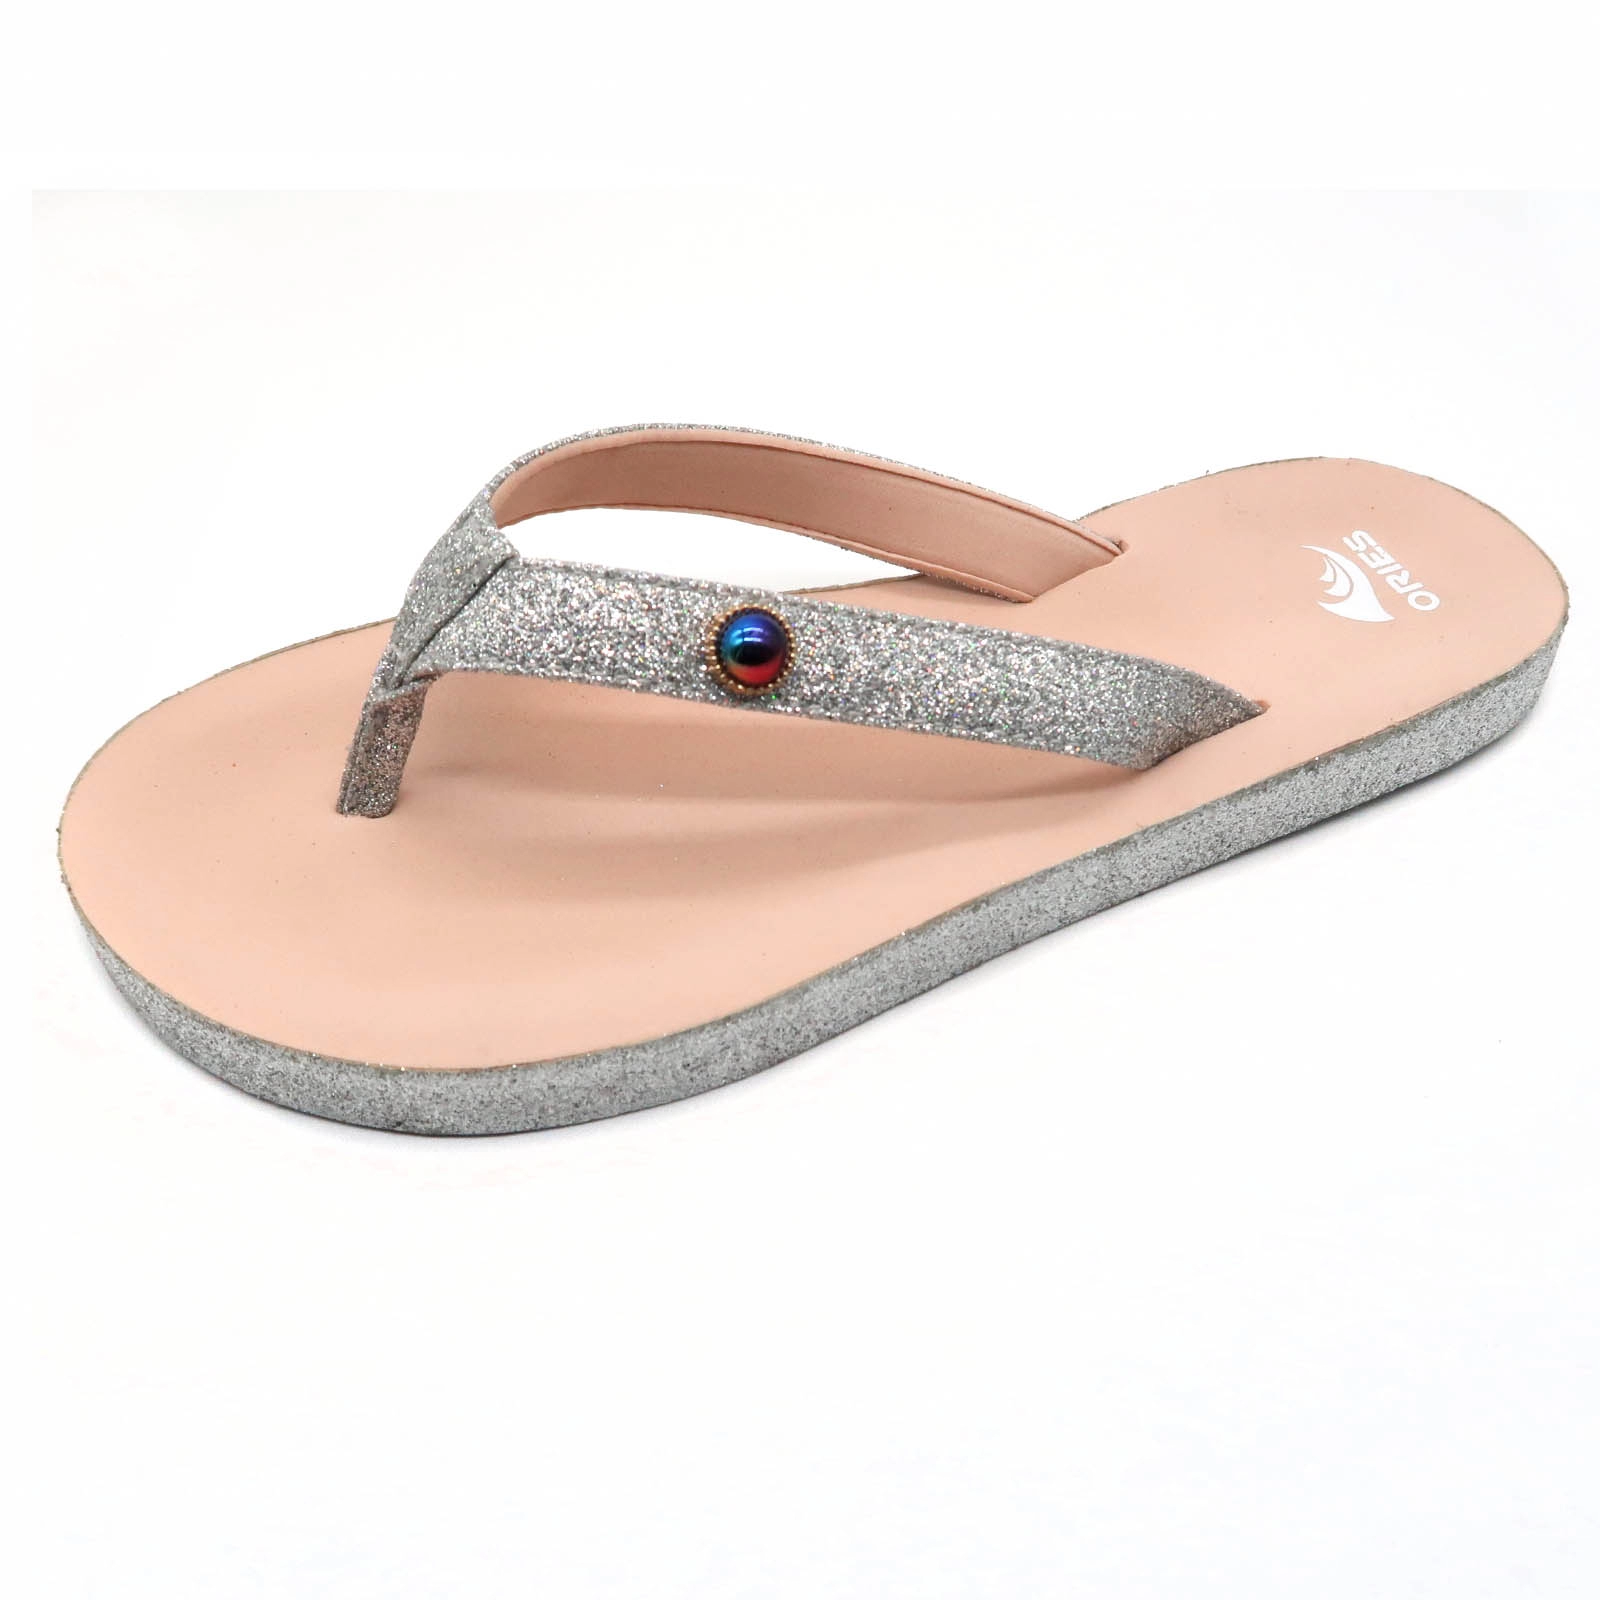 Gleit glänzendes Material am Sohlenrand und Riemen Fashion Girl Flip Flops Sandale